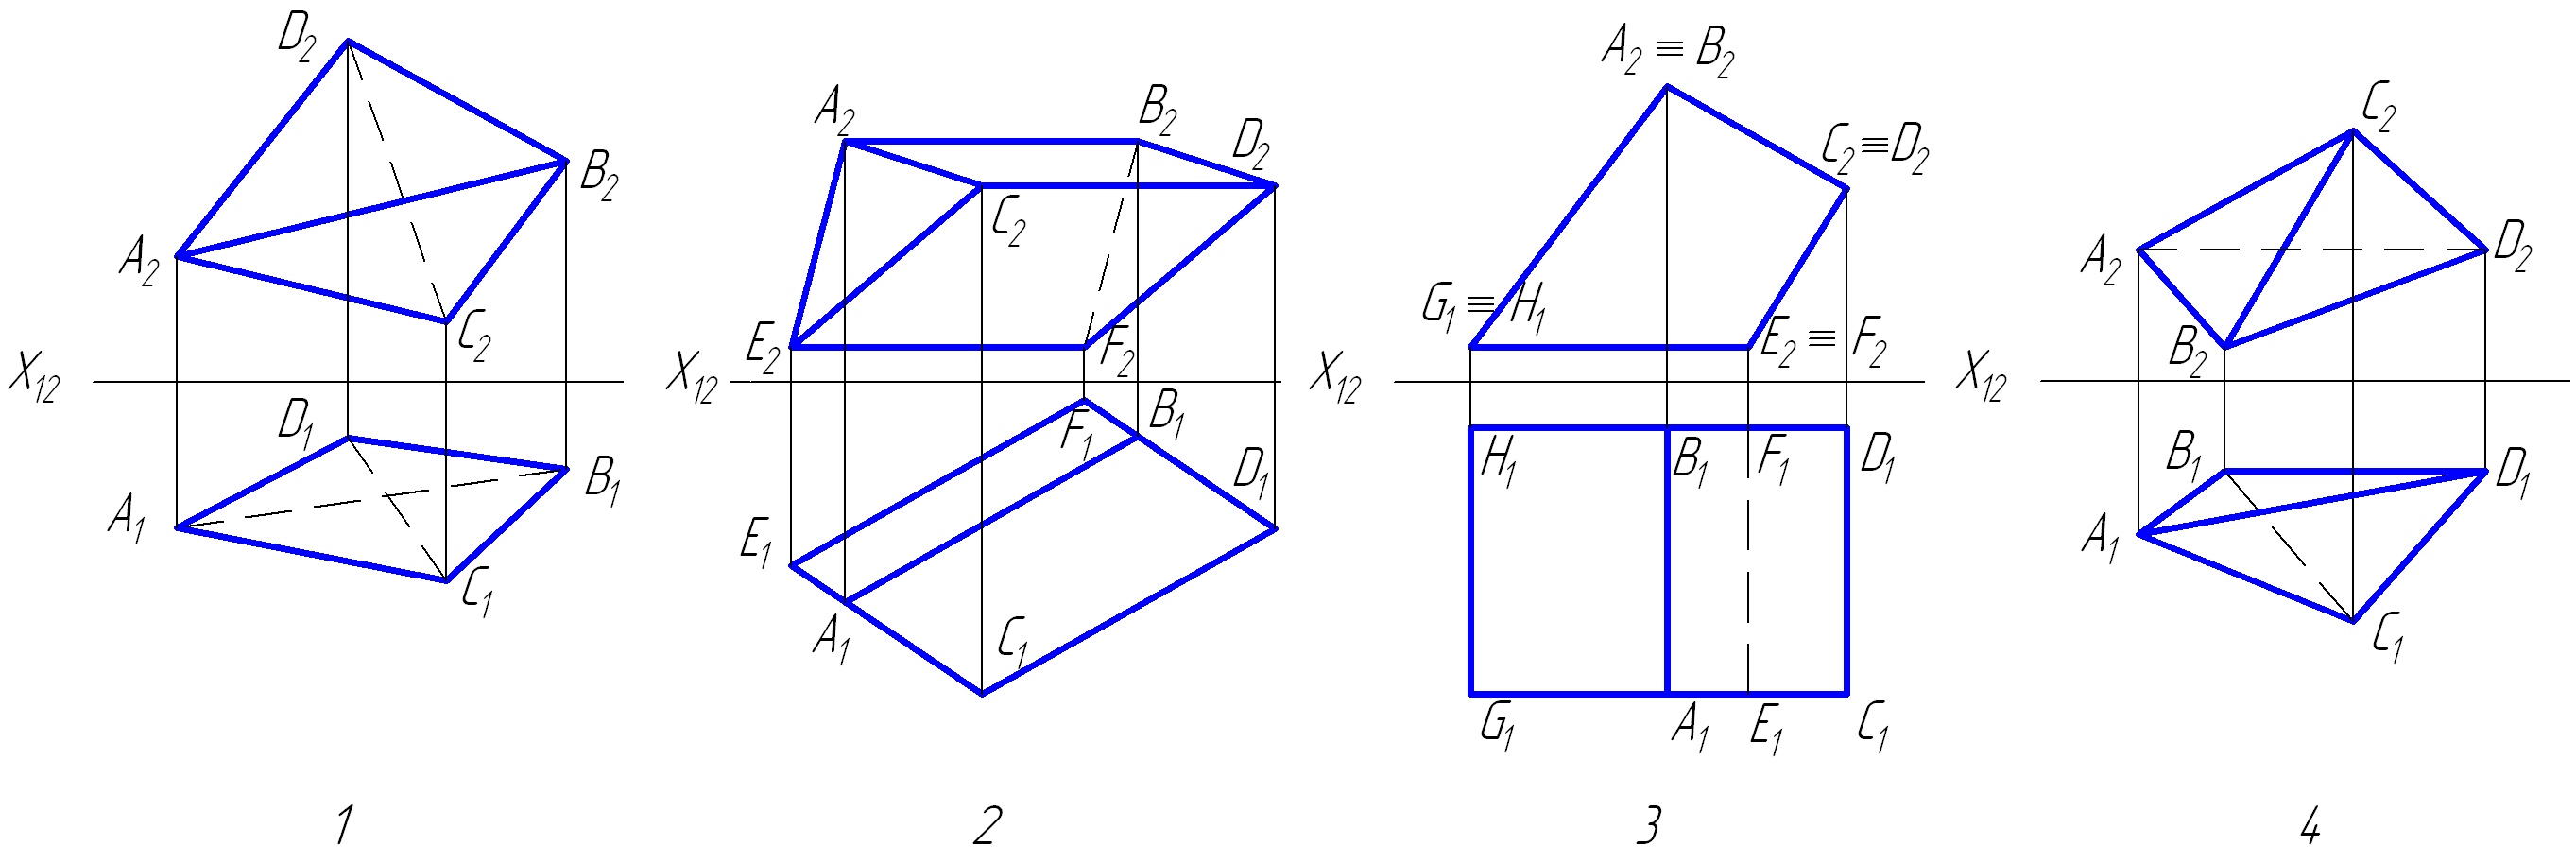 Фронтальной плоскости проекций п2 принадлежит точка